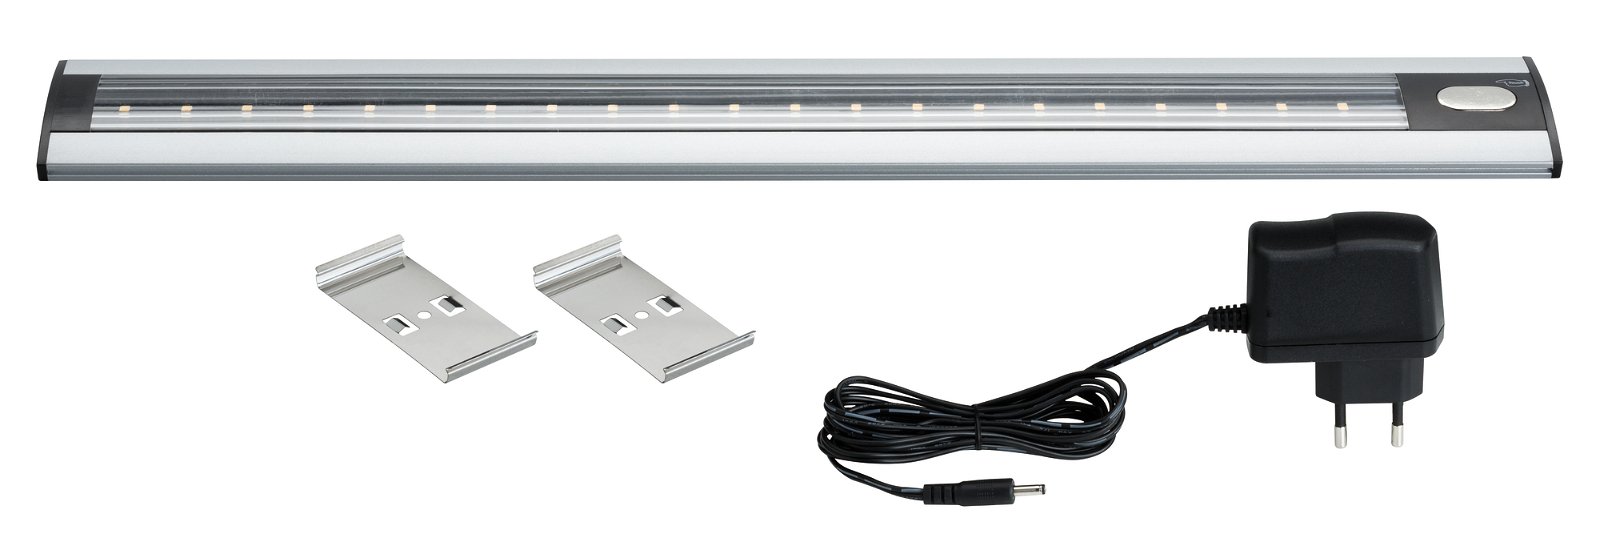 LED-kastverlichting TriX incl. sensor 465x65mm 340lm 230/12V 3000K Alu mat/Zwart